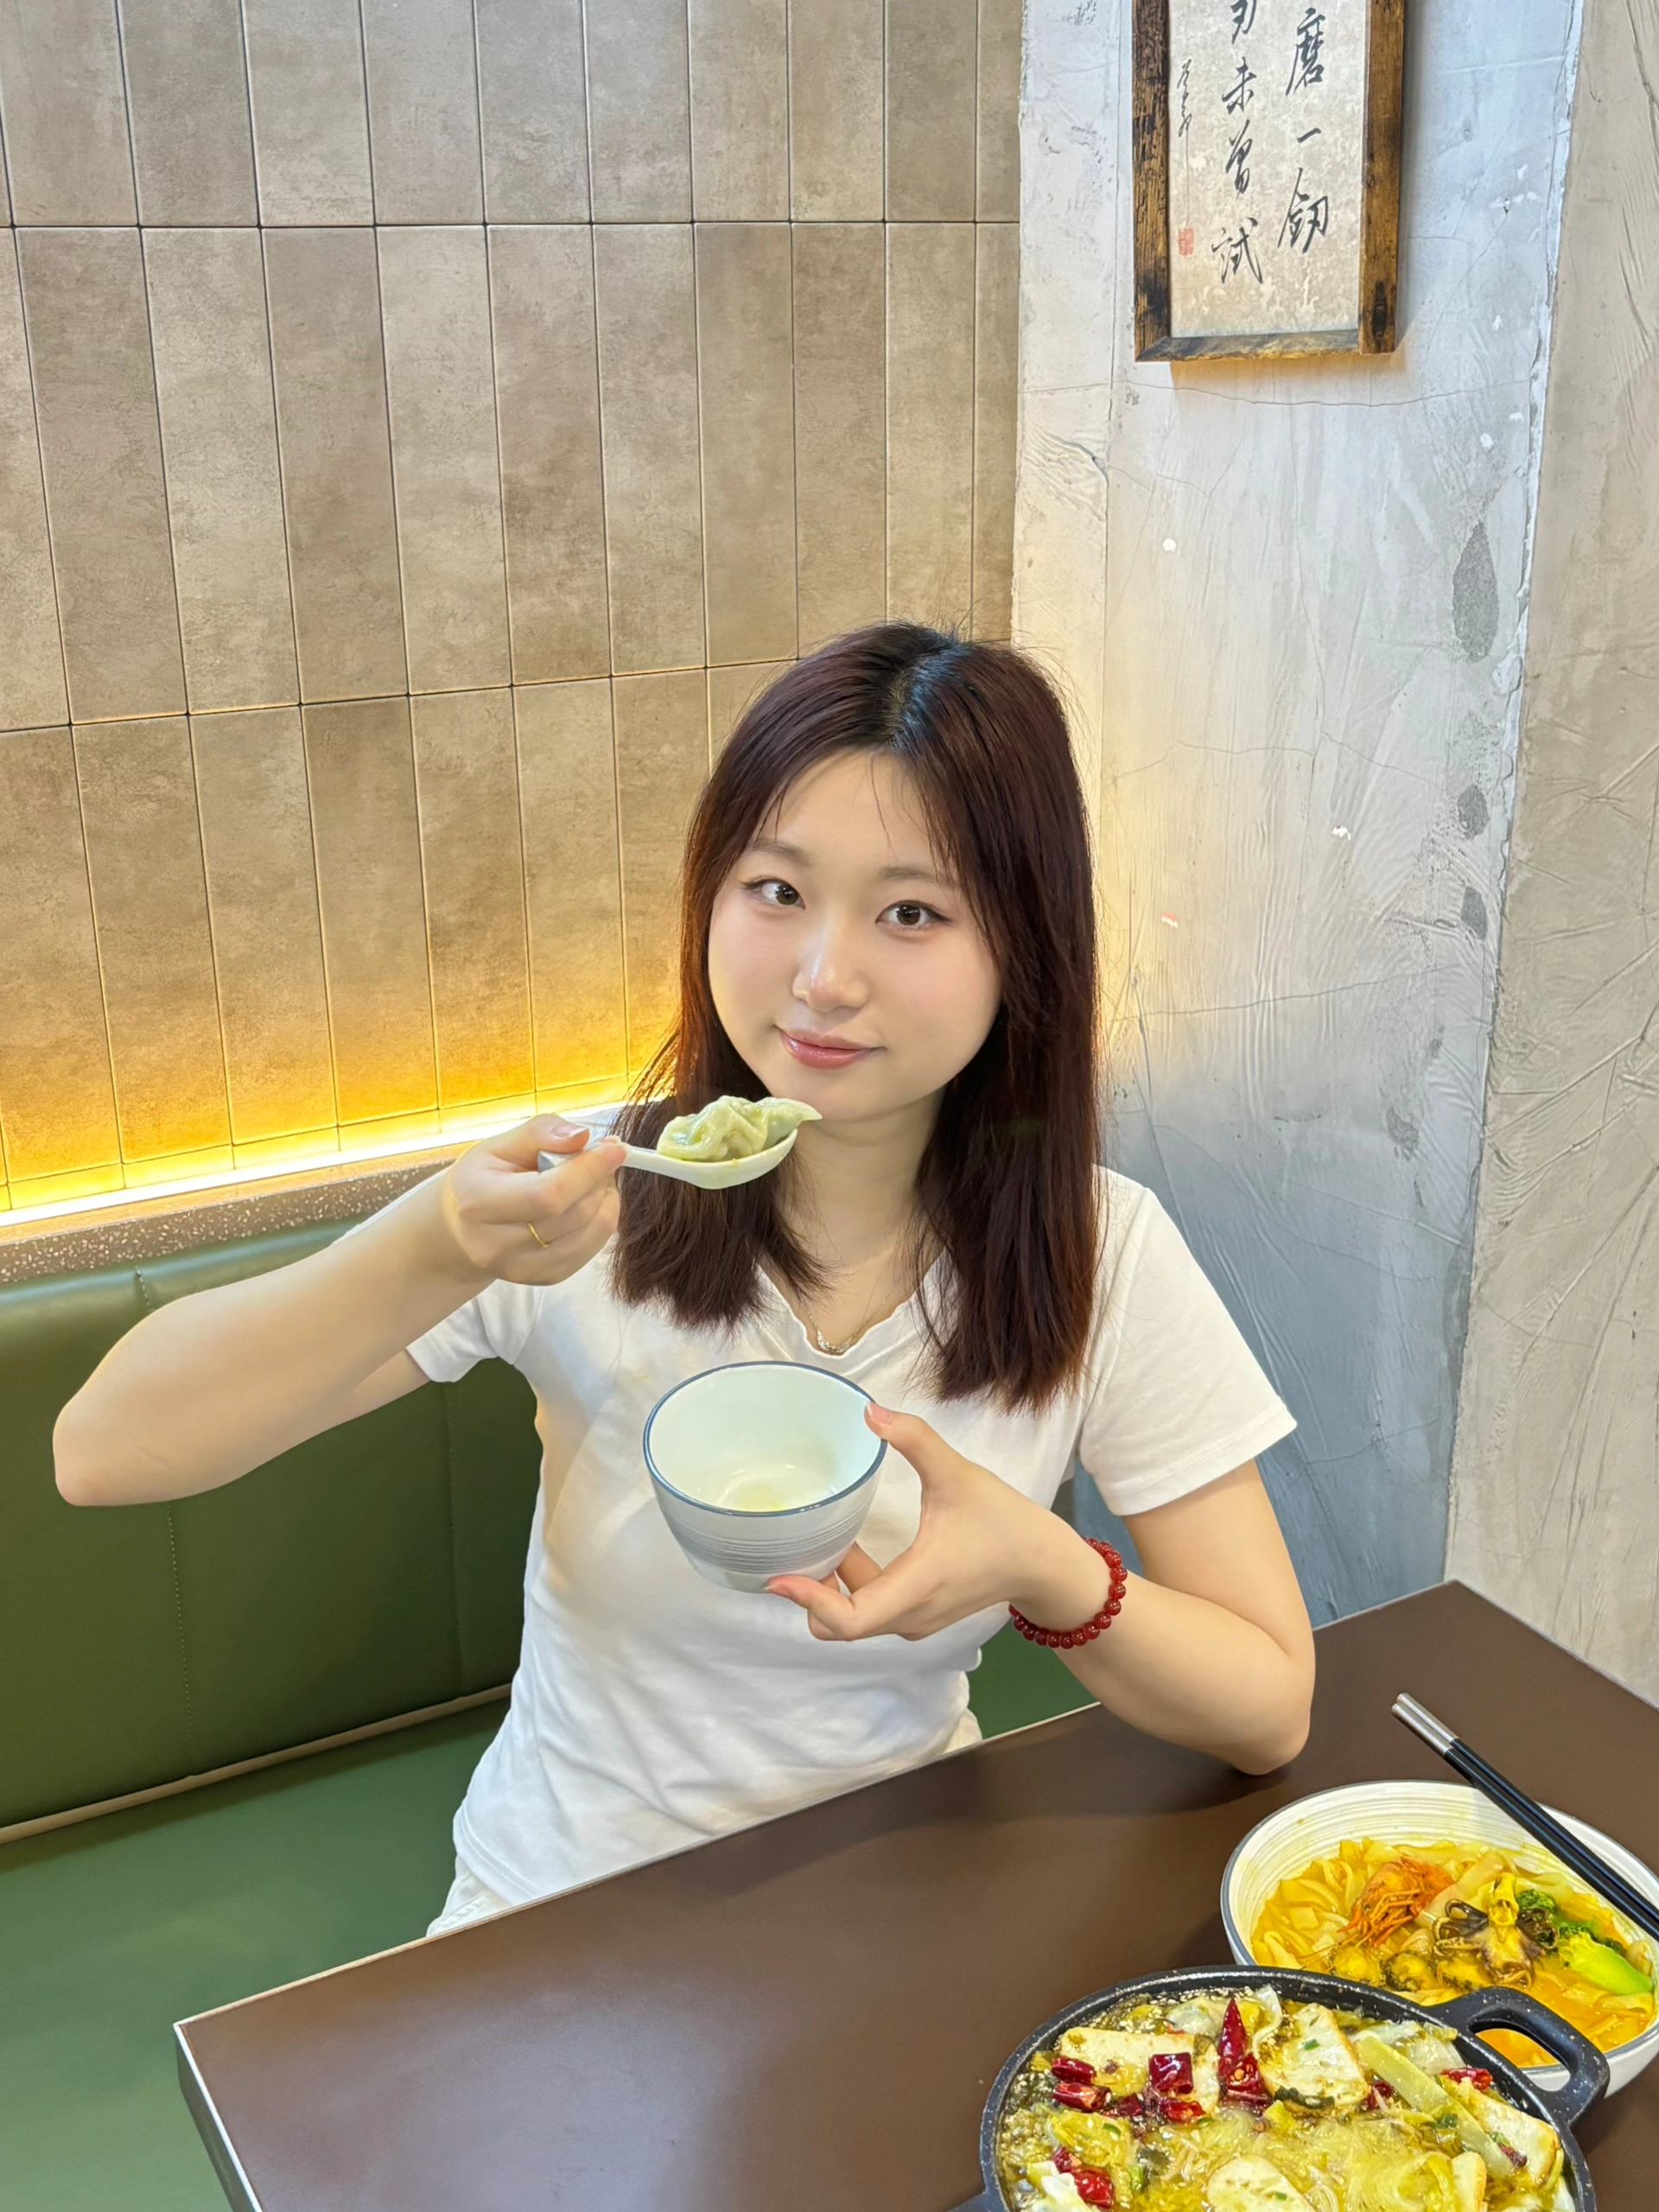 我在广州吃到了老坛酸菜🥟饺子火锅。。。